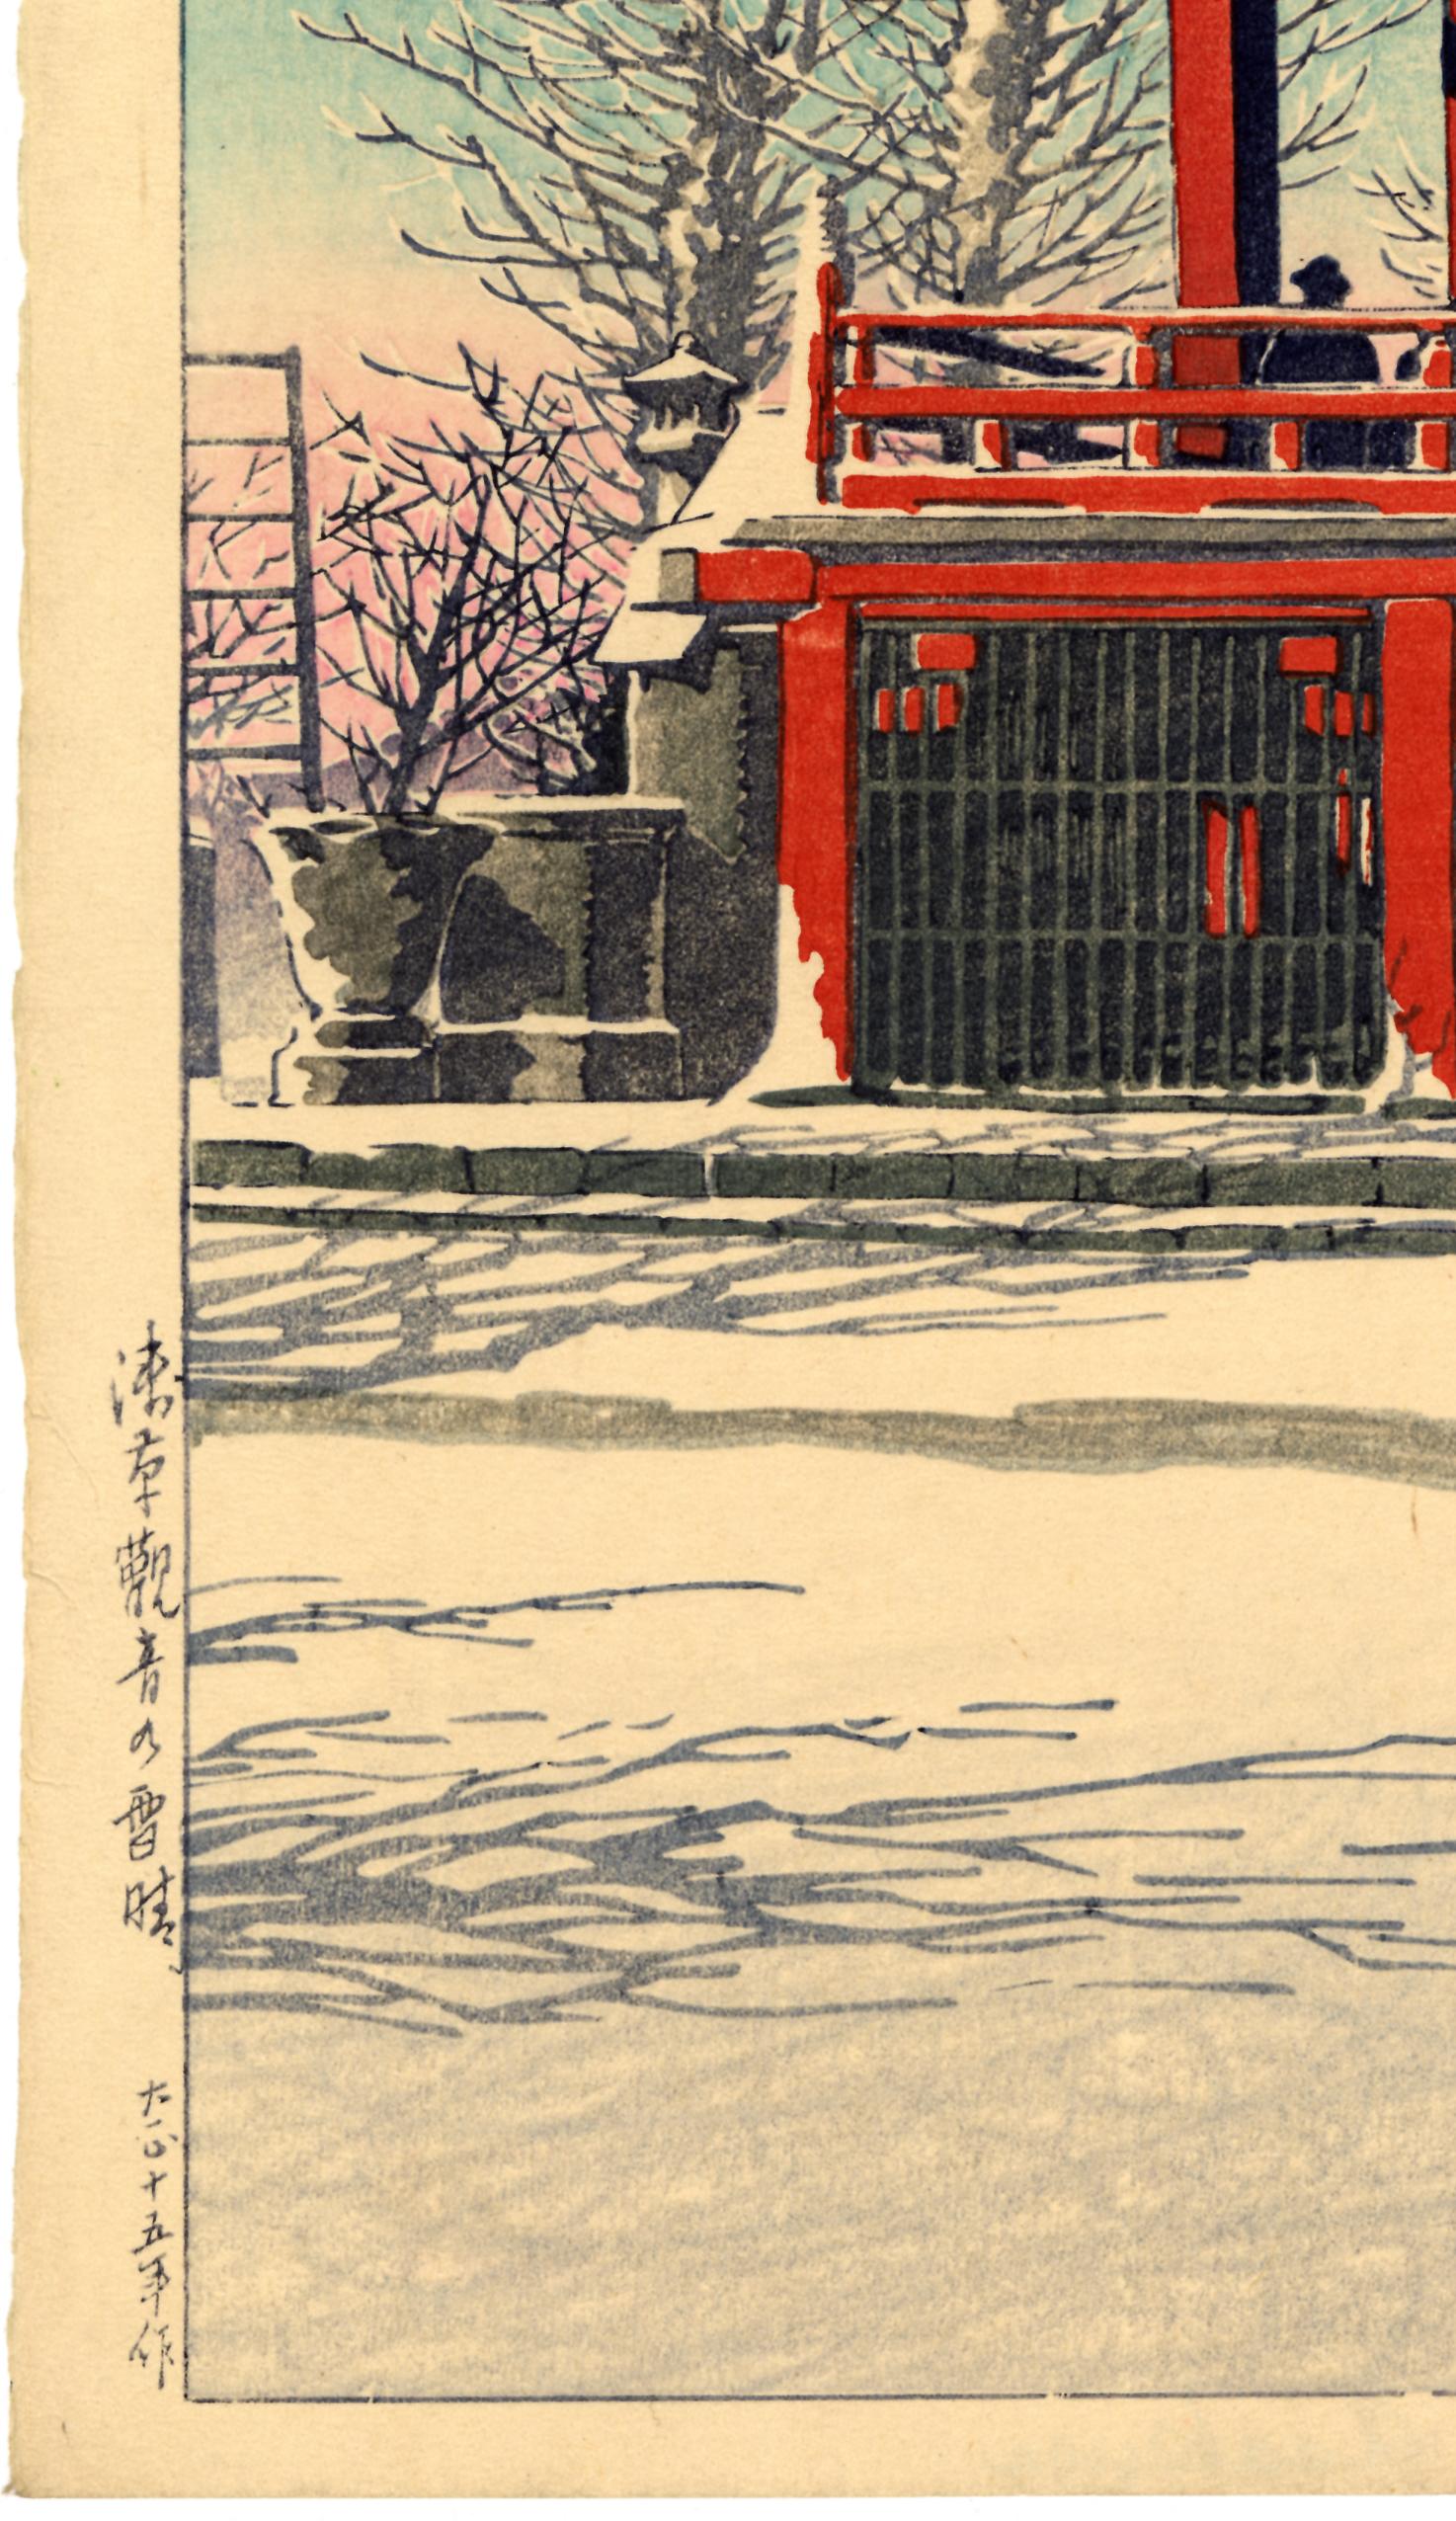 Clearing After a Snowfall at the Asakusa Kannon Temple - Showa Print by Kawase Hasui